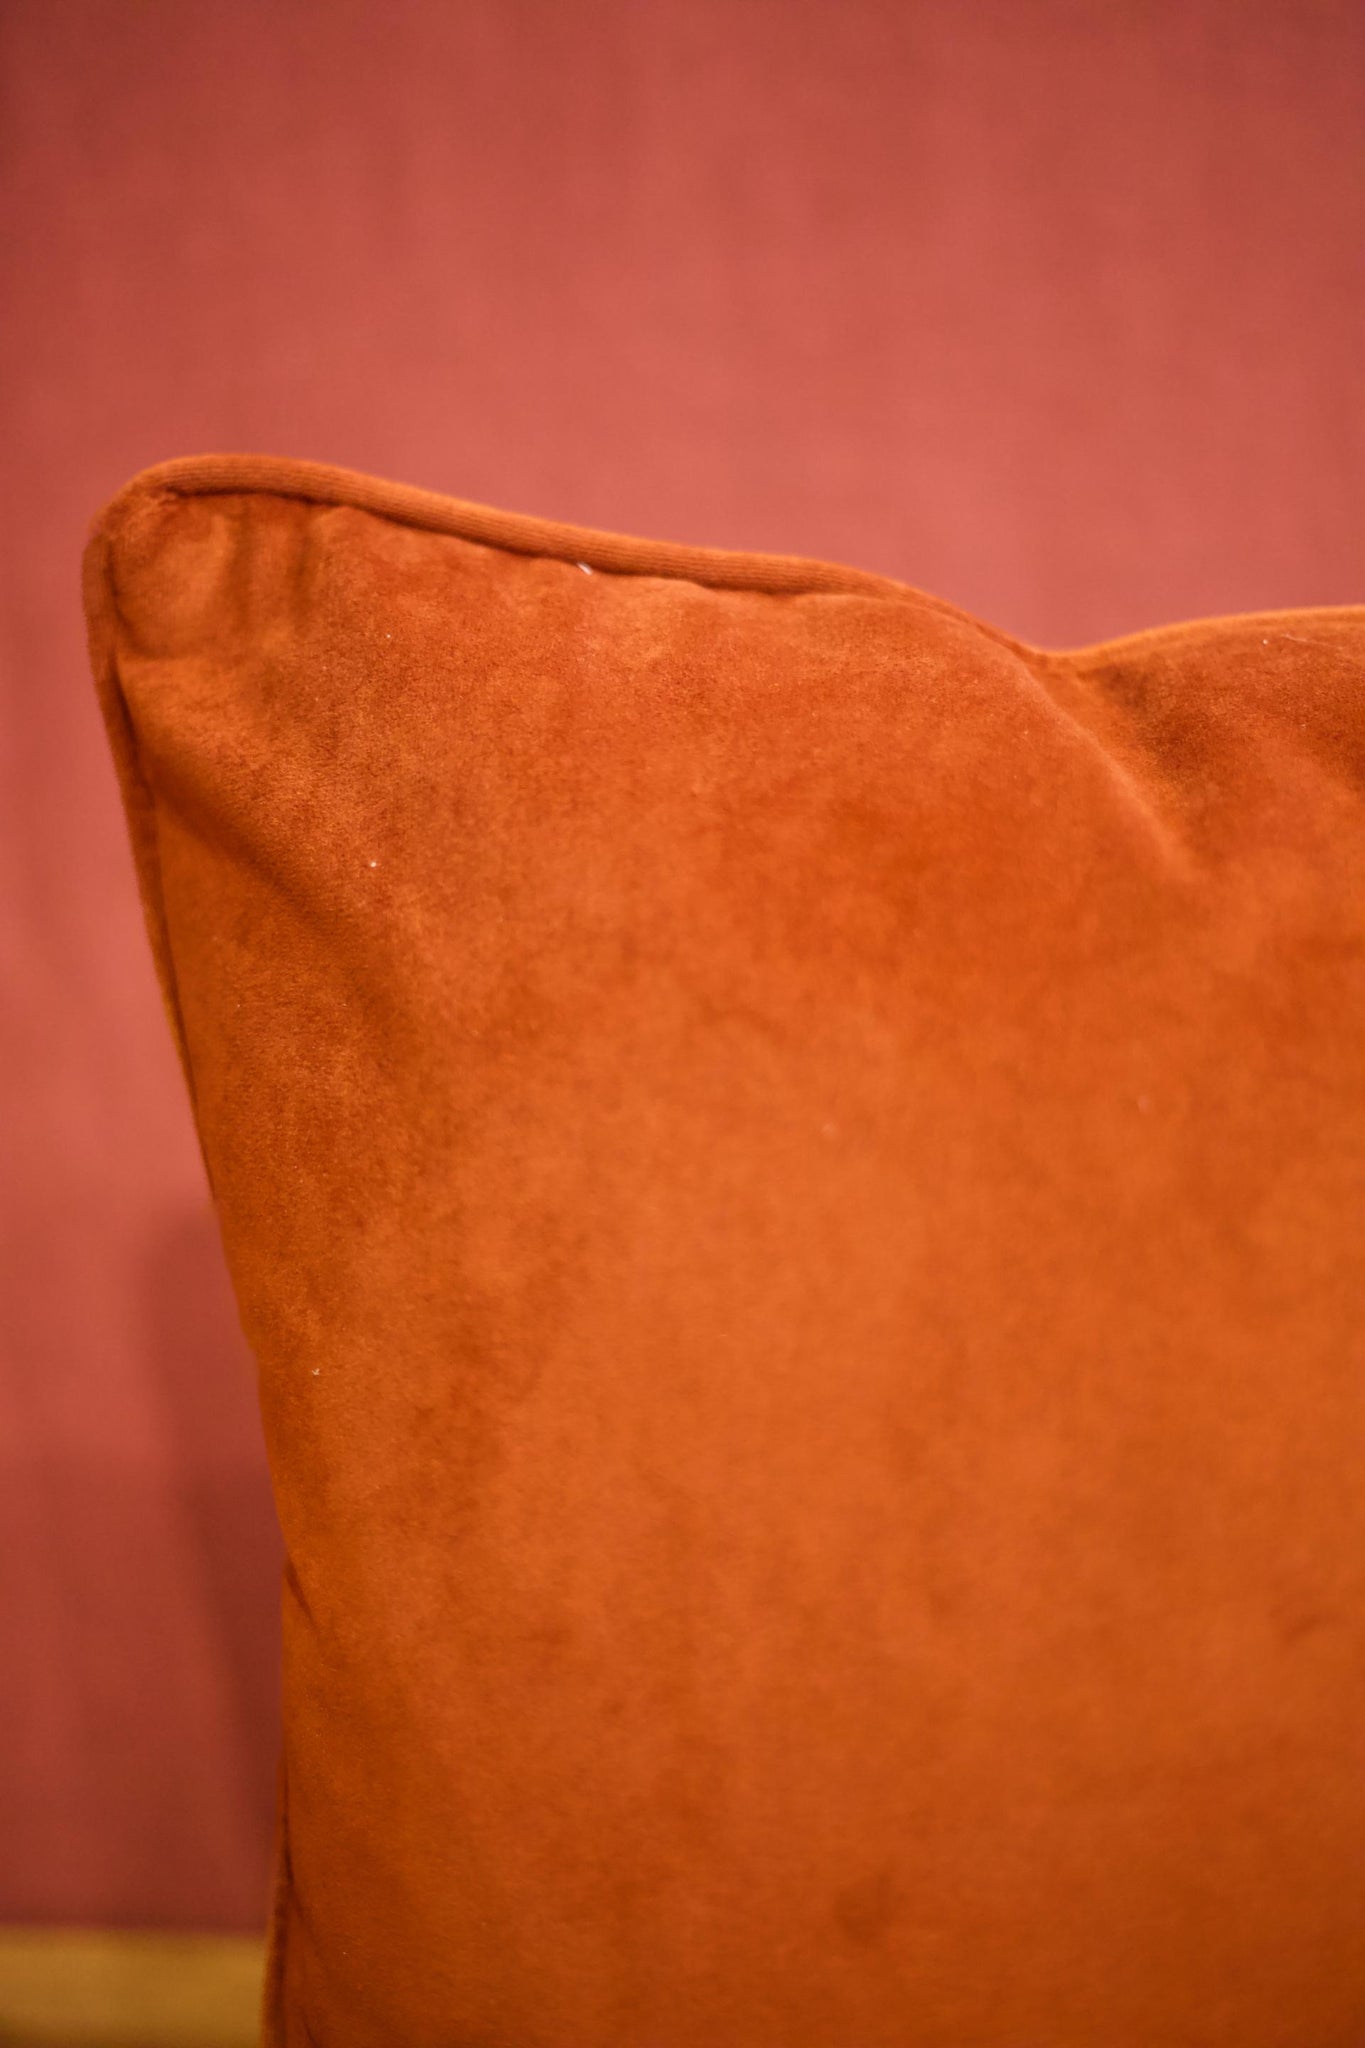 Umber velvet scatter cushions - 20 inch